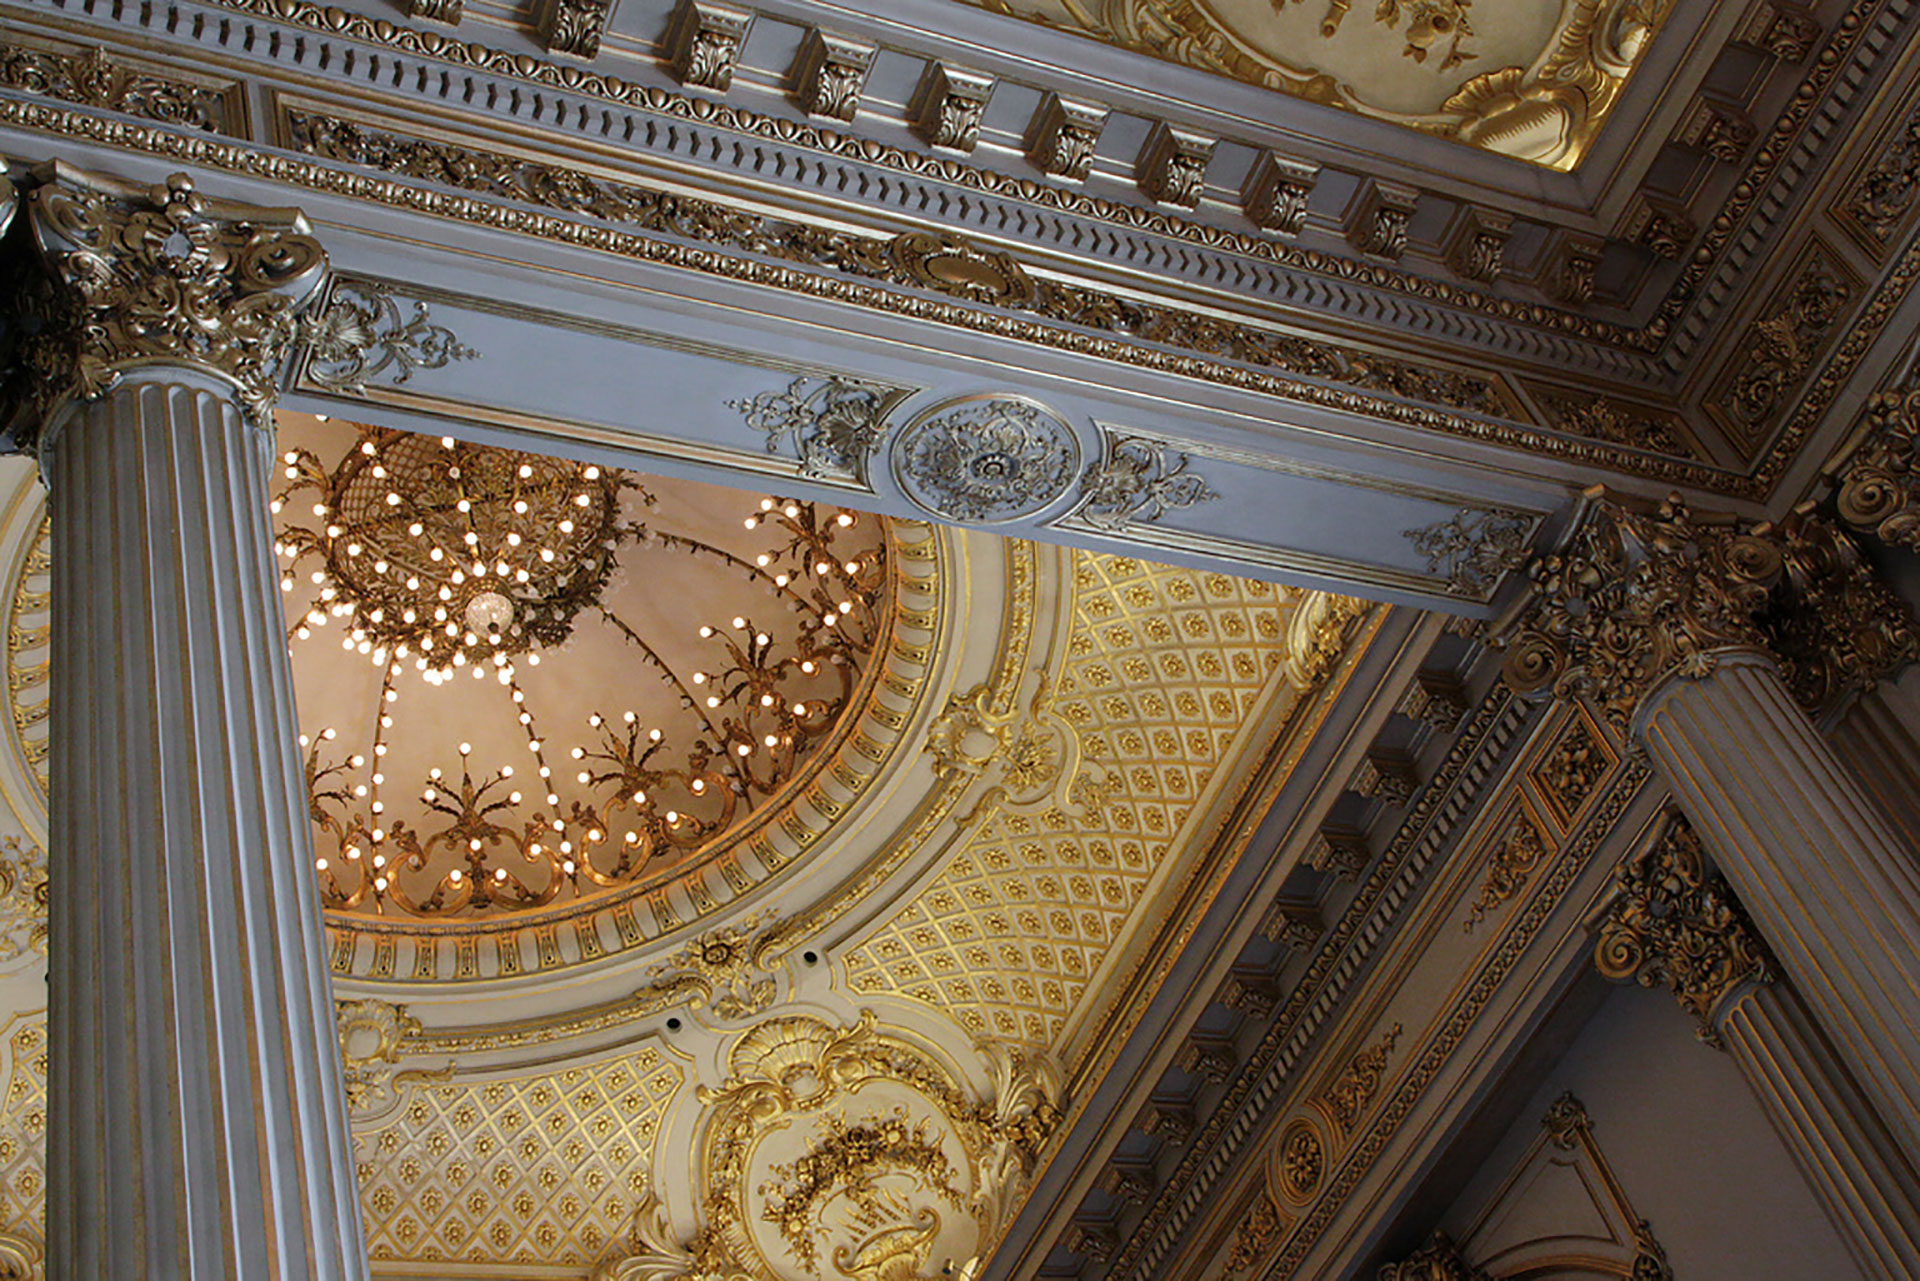 Ornamentos eclécticos en techos y columnas deslumbran a sus visitantes